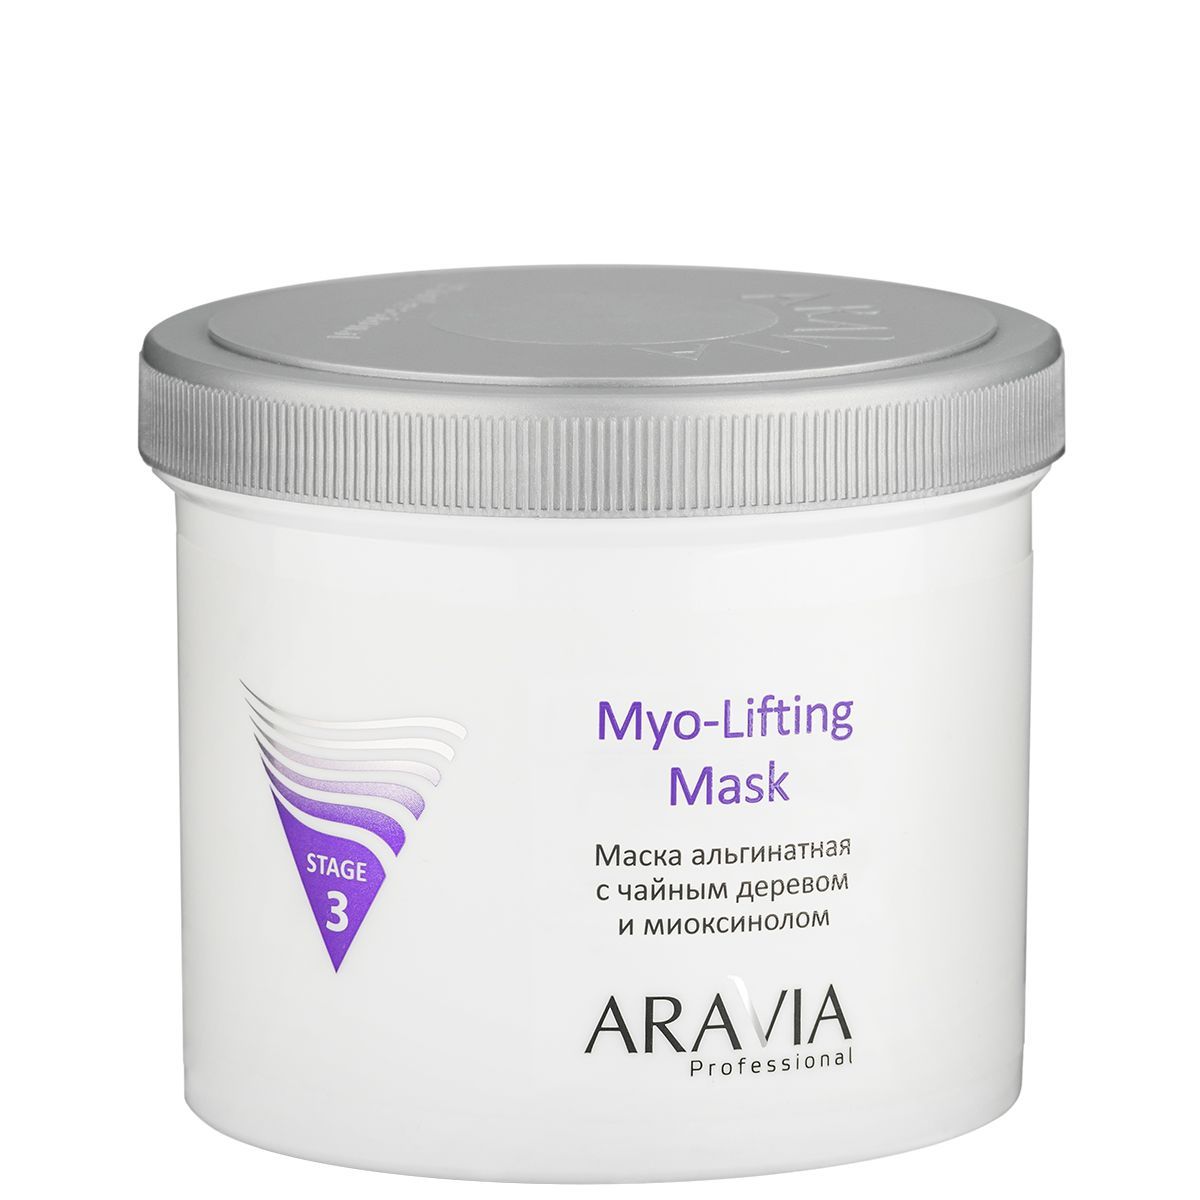 Aravia Professional Маска альгинатная с чайным деревом и миоксинолом Myo-Lifting, 550мл